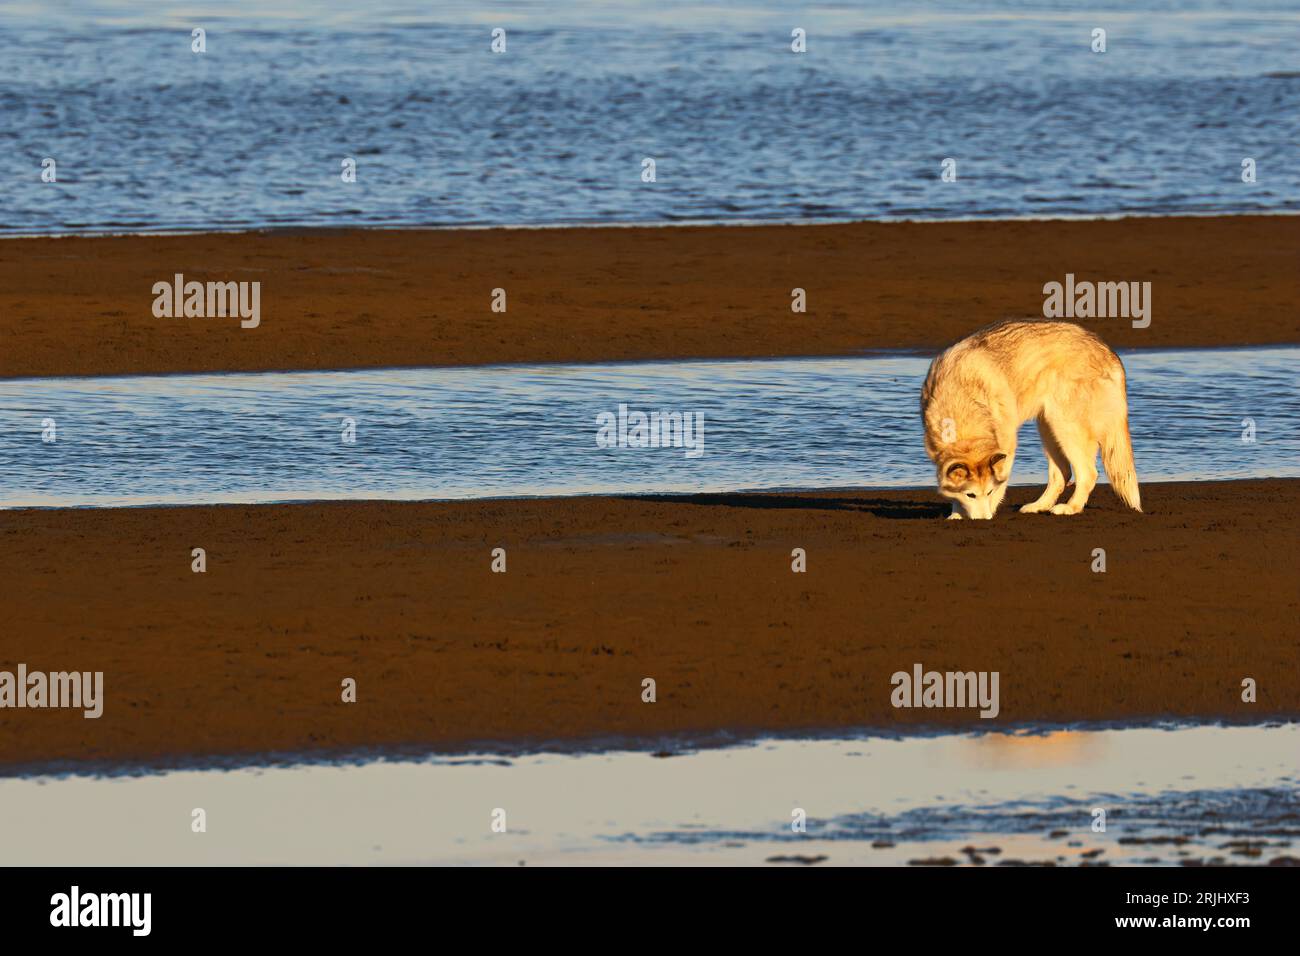 Ein Husky-Hund am Strand, braunes Fell. Wunderschöner Hund auf dem Sand. Stockfoto